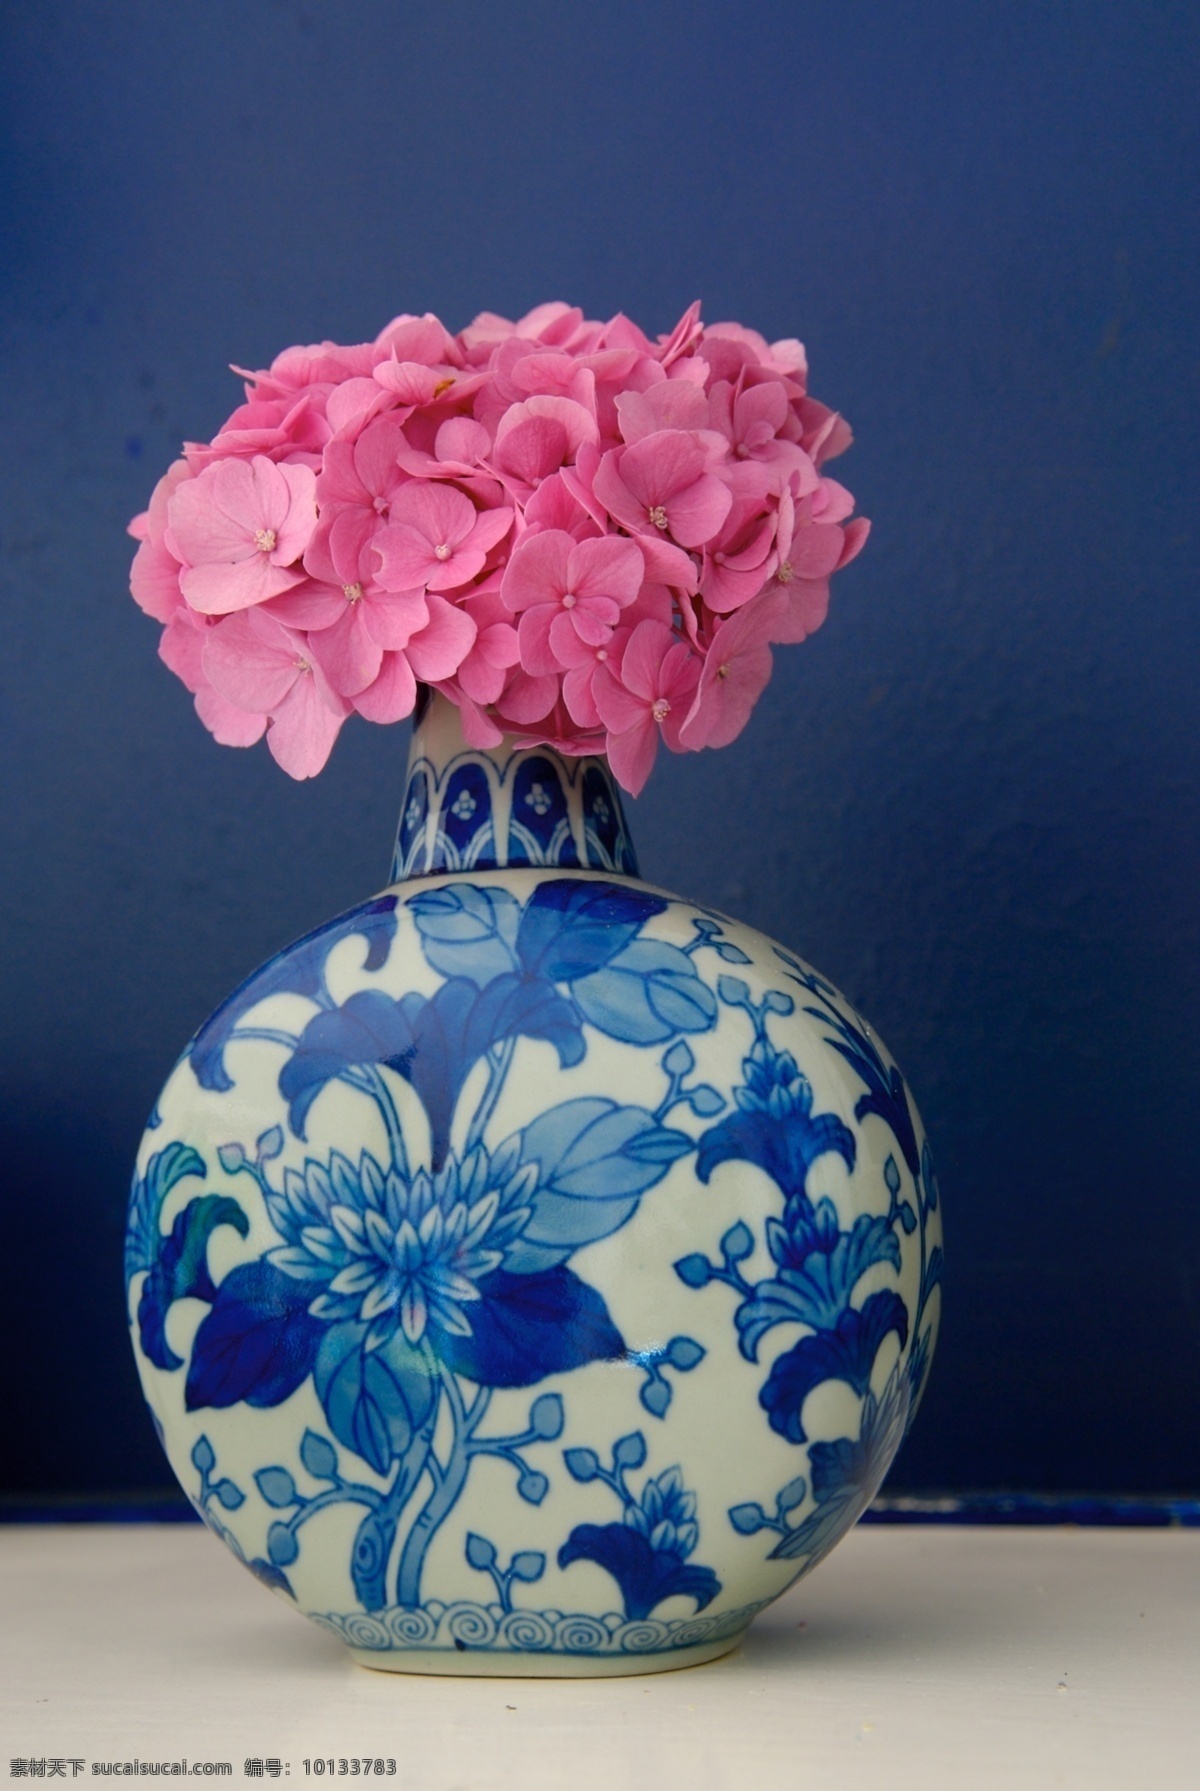 青花瓷 古董 花瓶 传统文化 文化艺术 bmp 蓝色